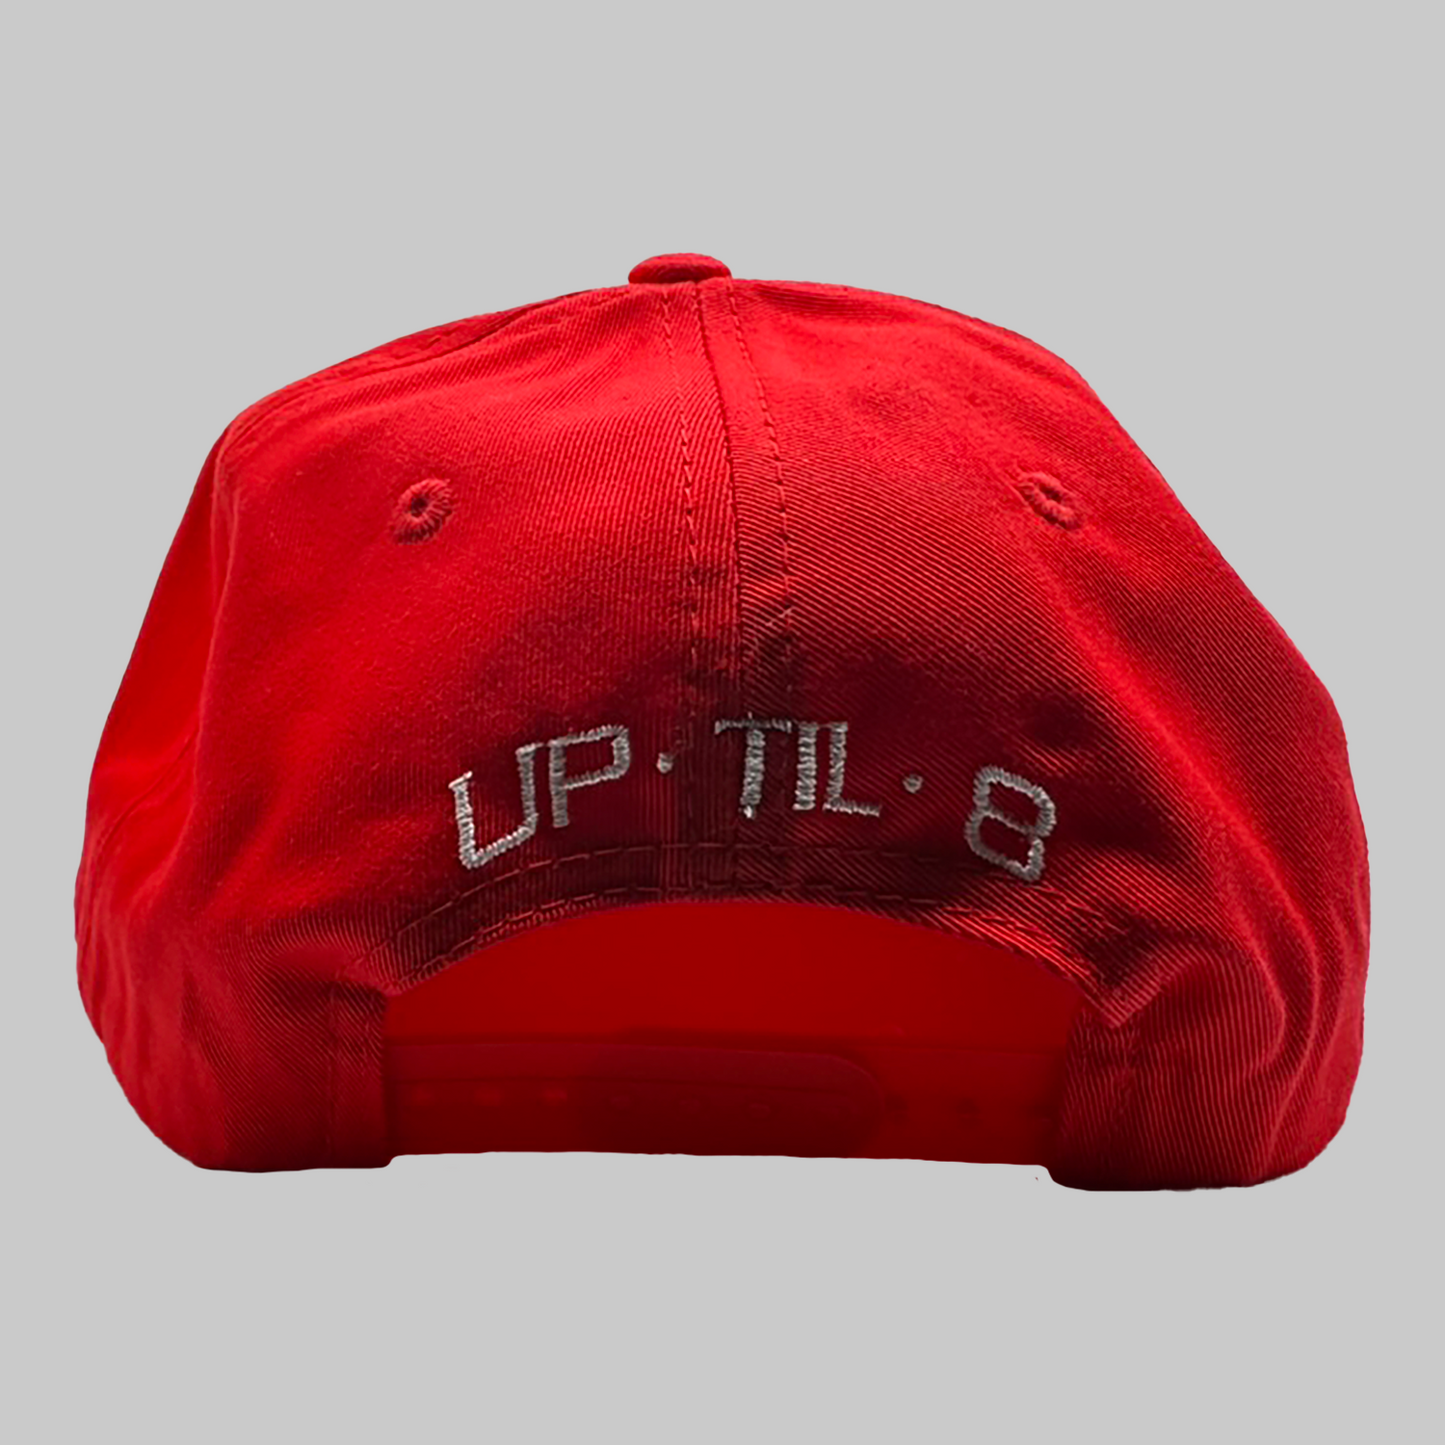 UpTil8 SnapBack - Red